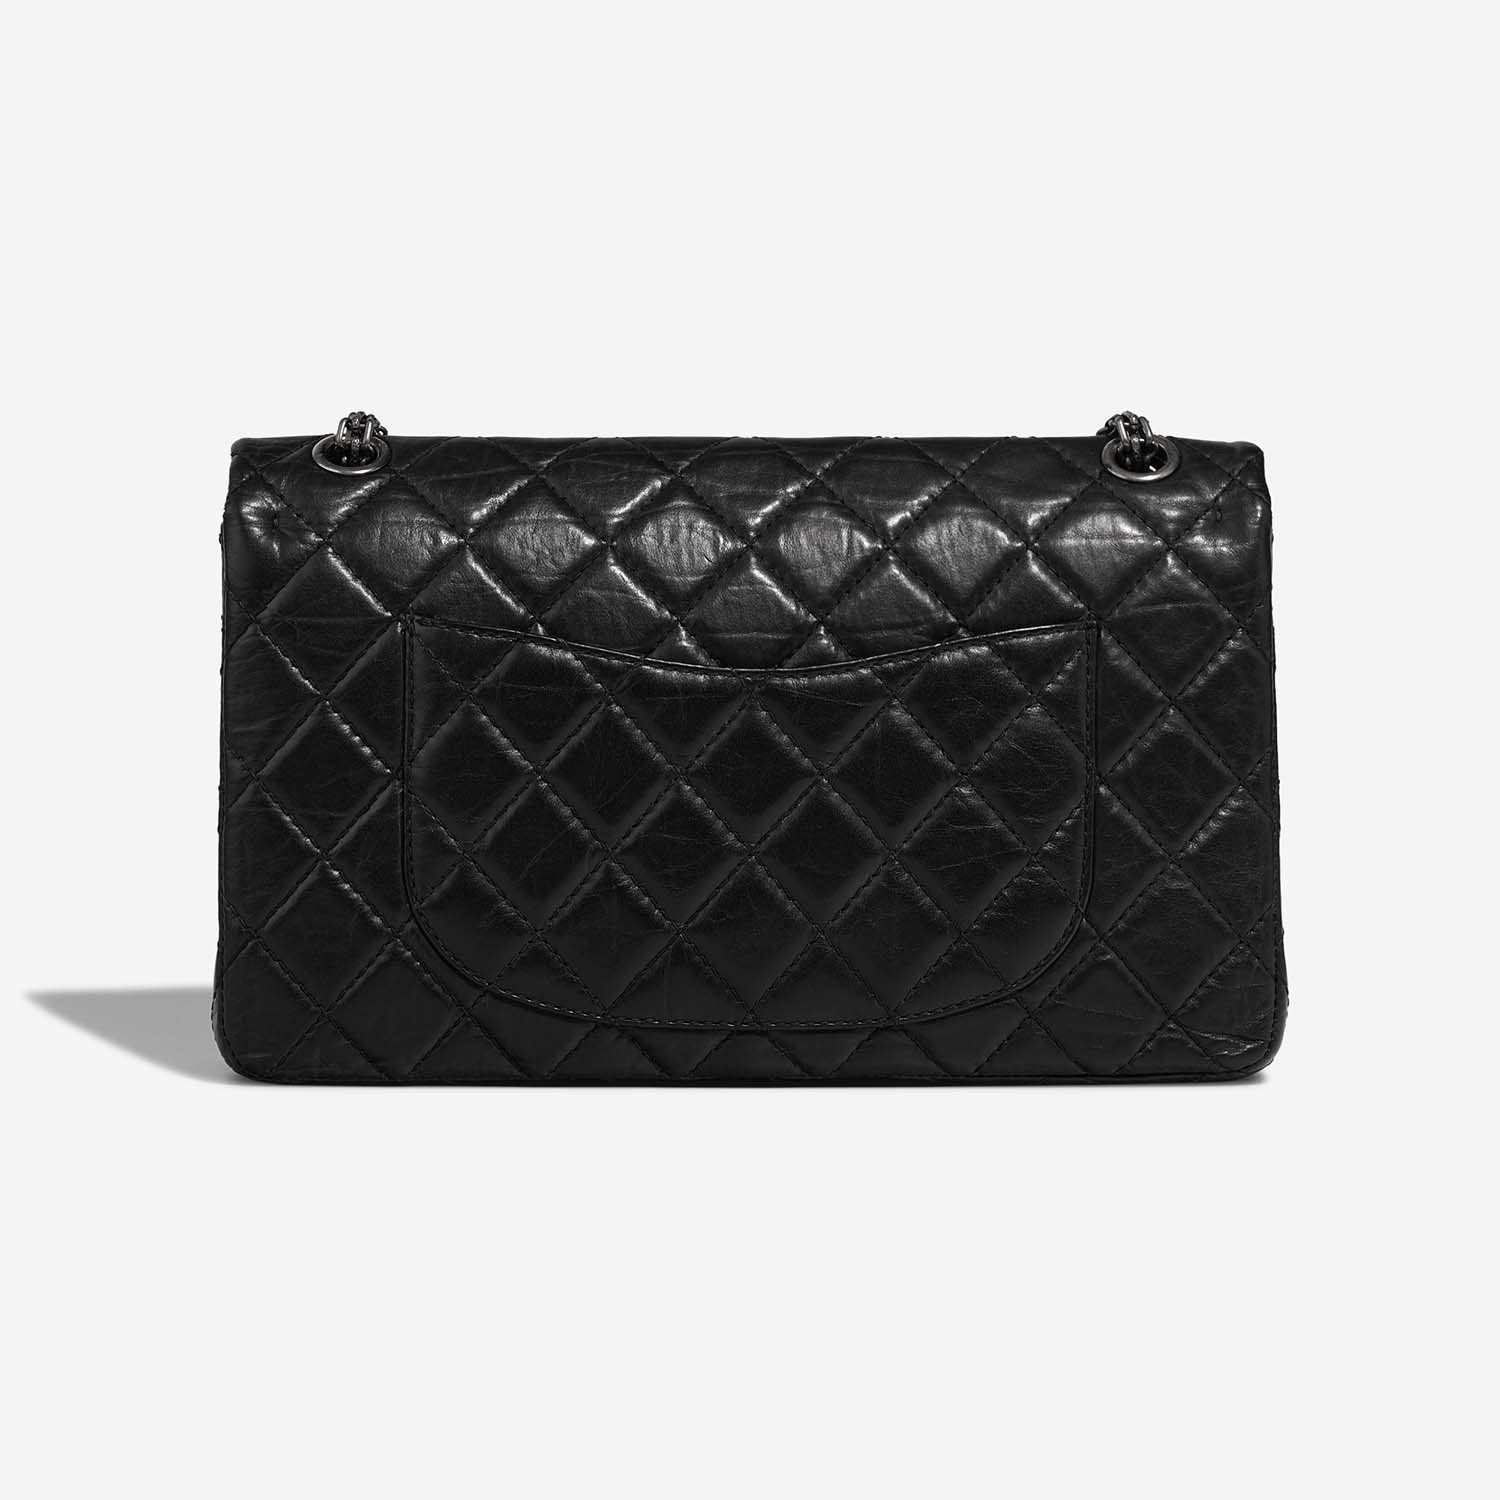 Chanel 255 226 Black Back | Verkaufen Sie Ihre Designer-Tasche auf Saclab.com